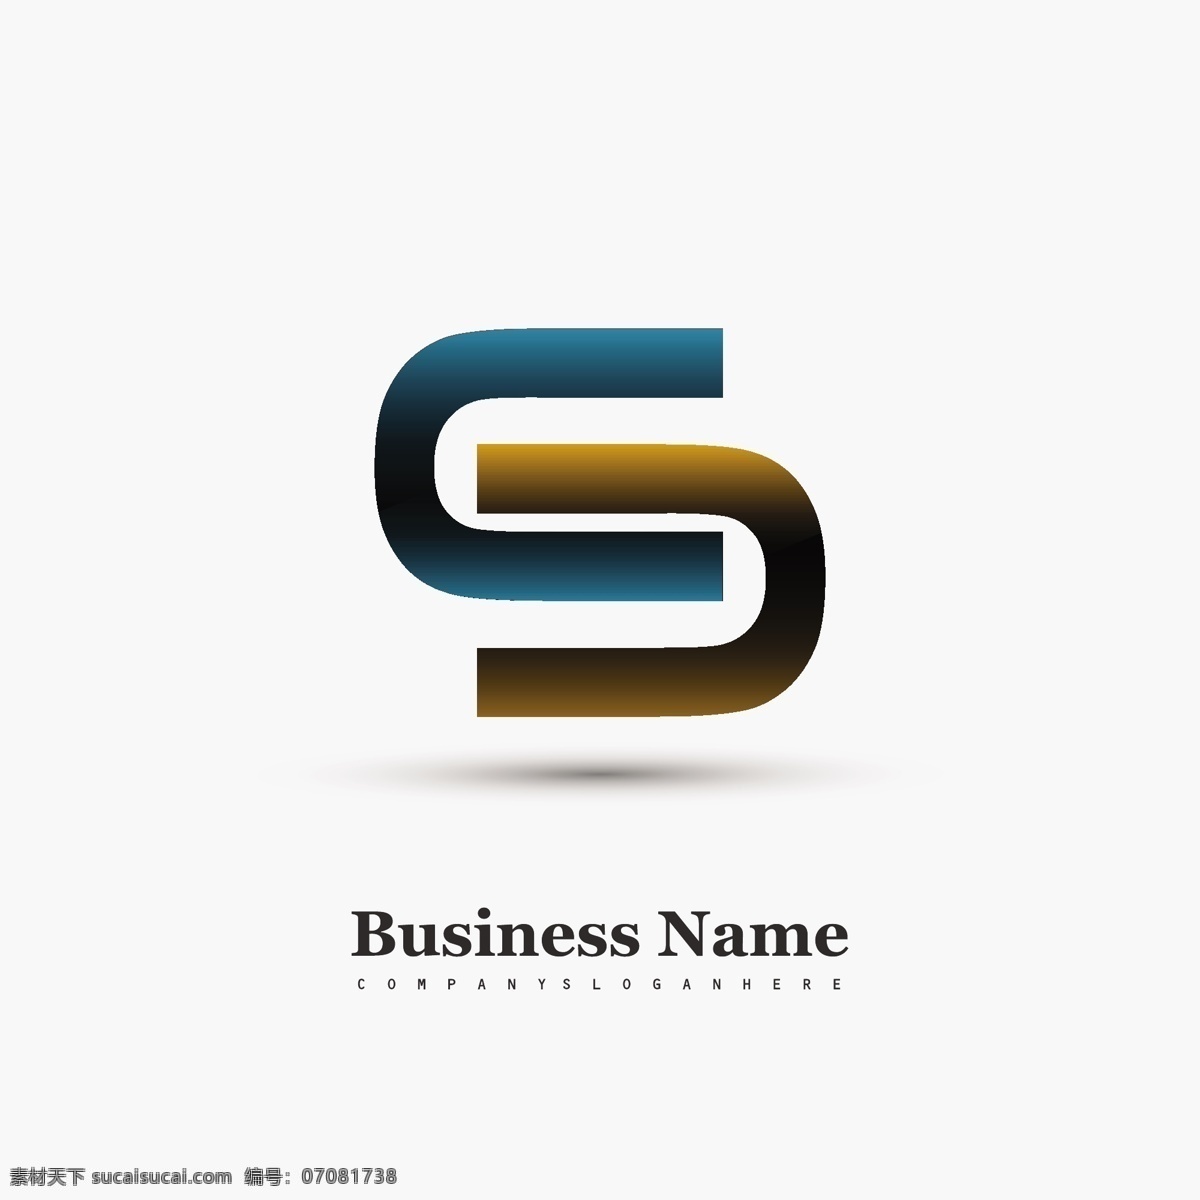 符号标志 标识 商业 抽象 标志设计 蓝色 企业 公司 品牌 创意 抽象的标志 现代 商业图标 符号 身份 抽象设计 商业标识 新潮 白色